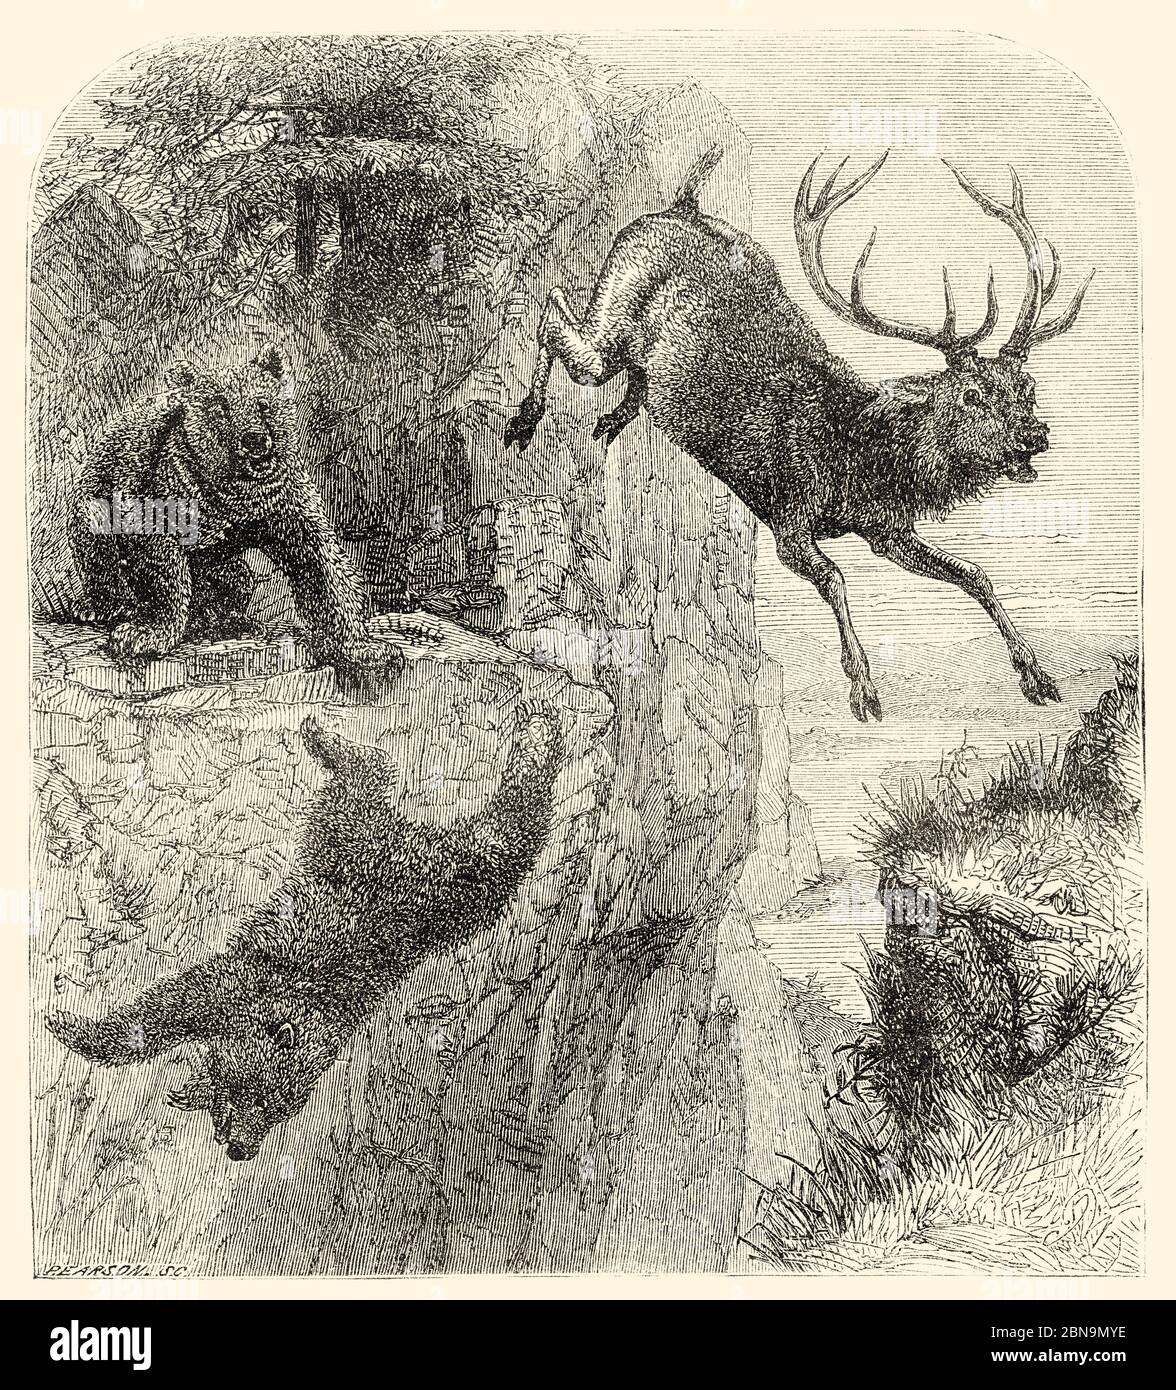 Ours essayant de chasser un cerf. Kirghizistan, Asie centrale. Illustration gravée du XIXe siècle, le Tour du monde 1863 Banque D'Images